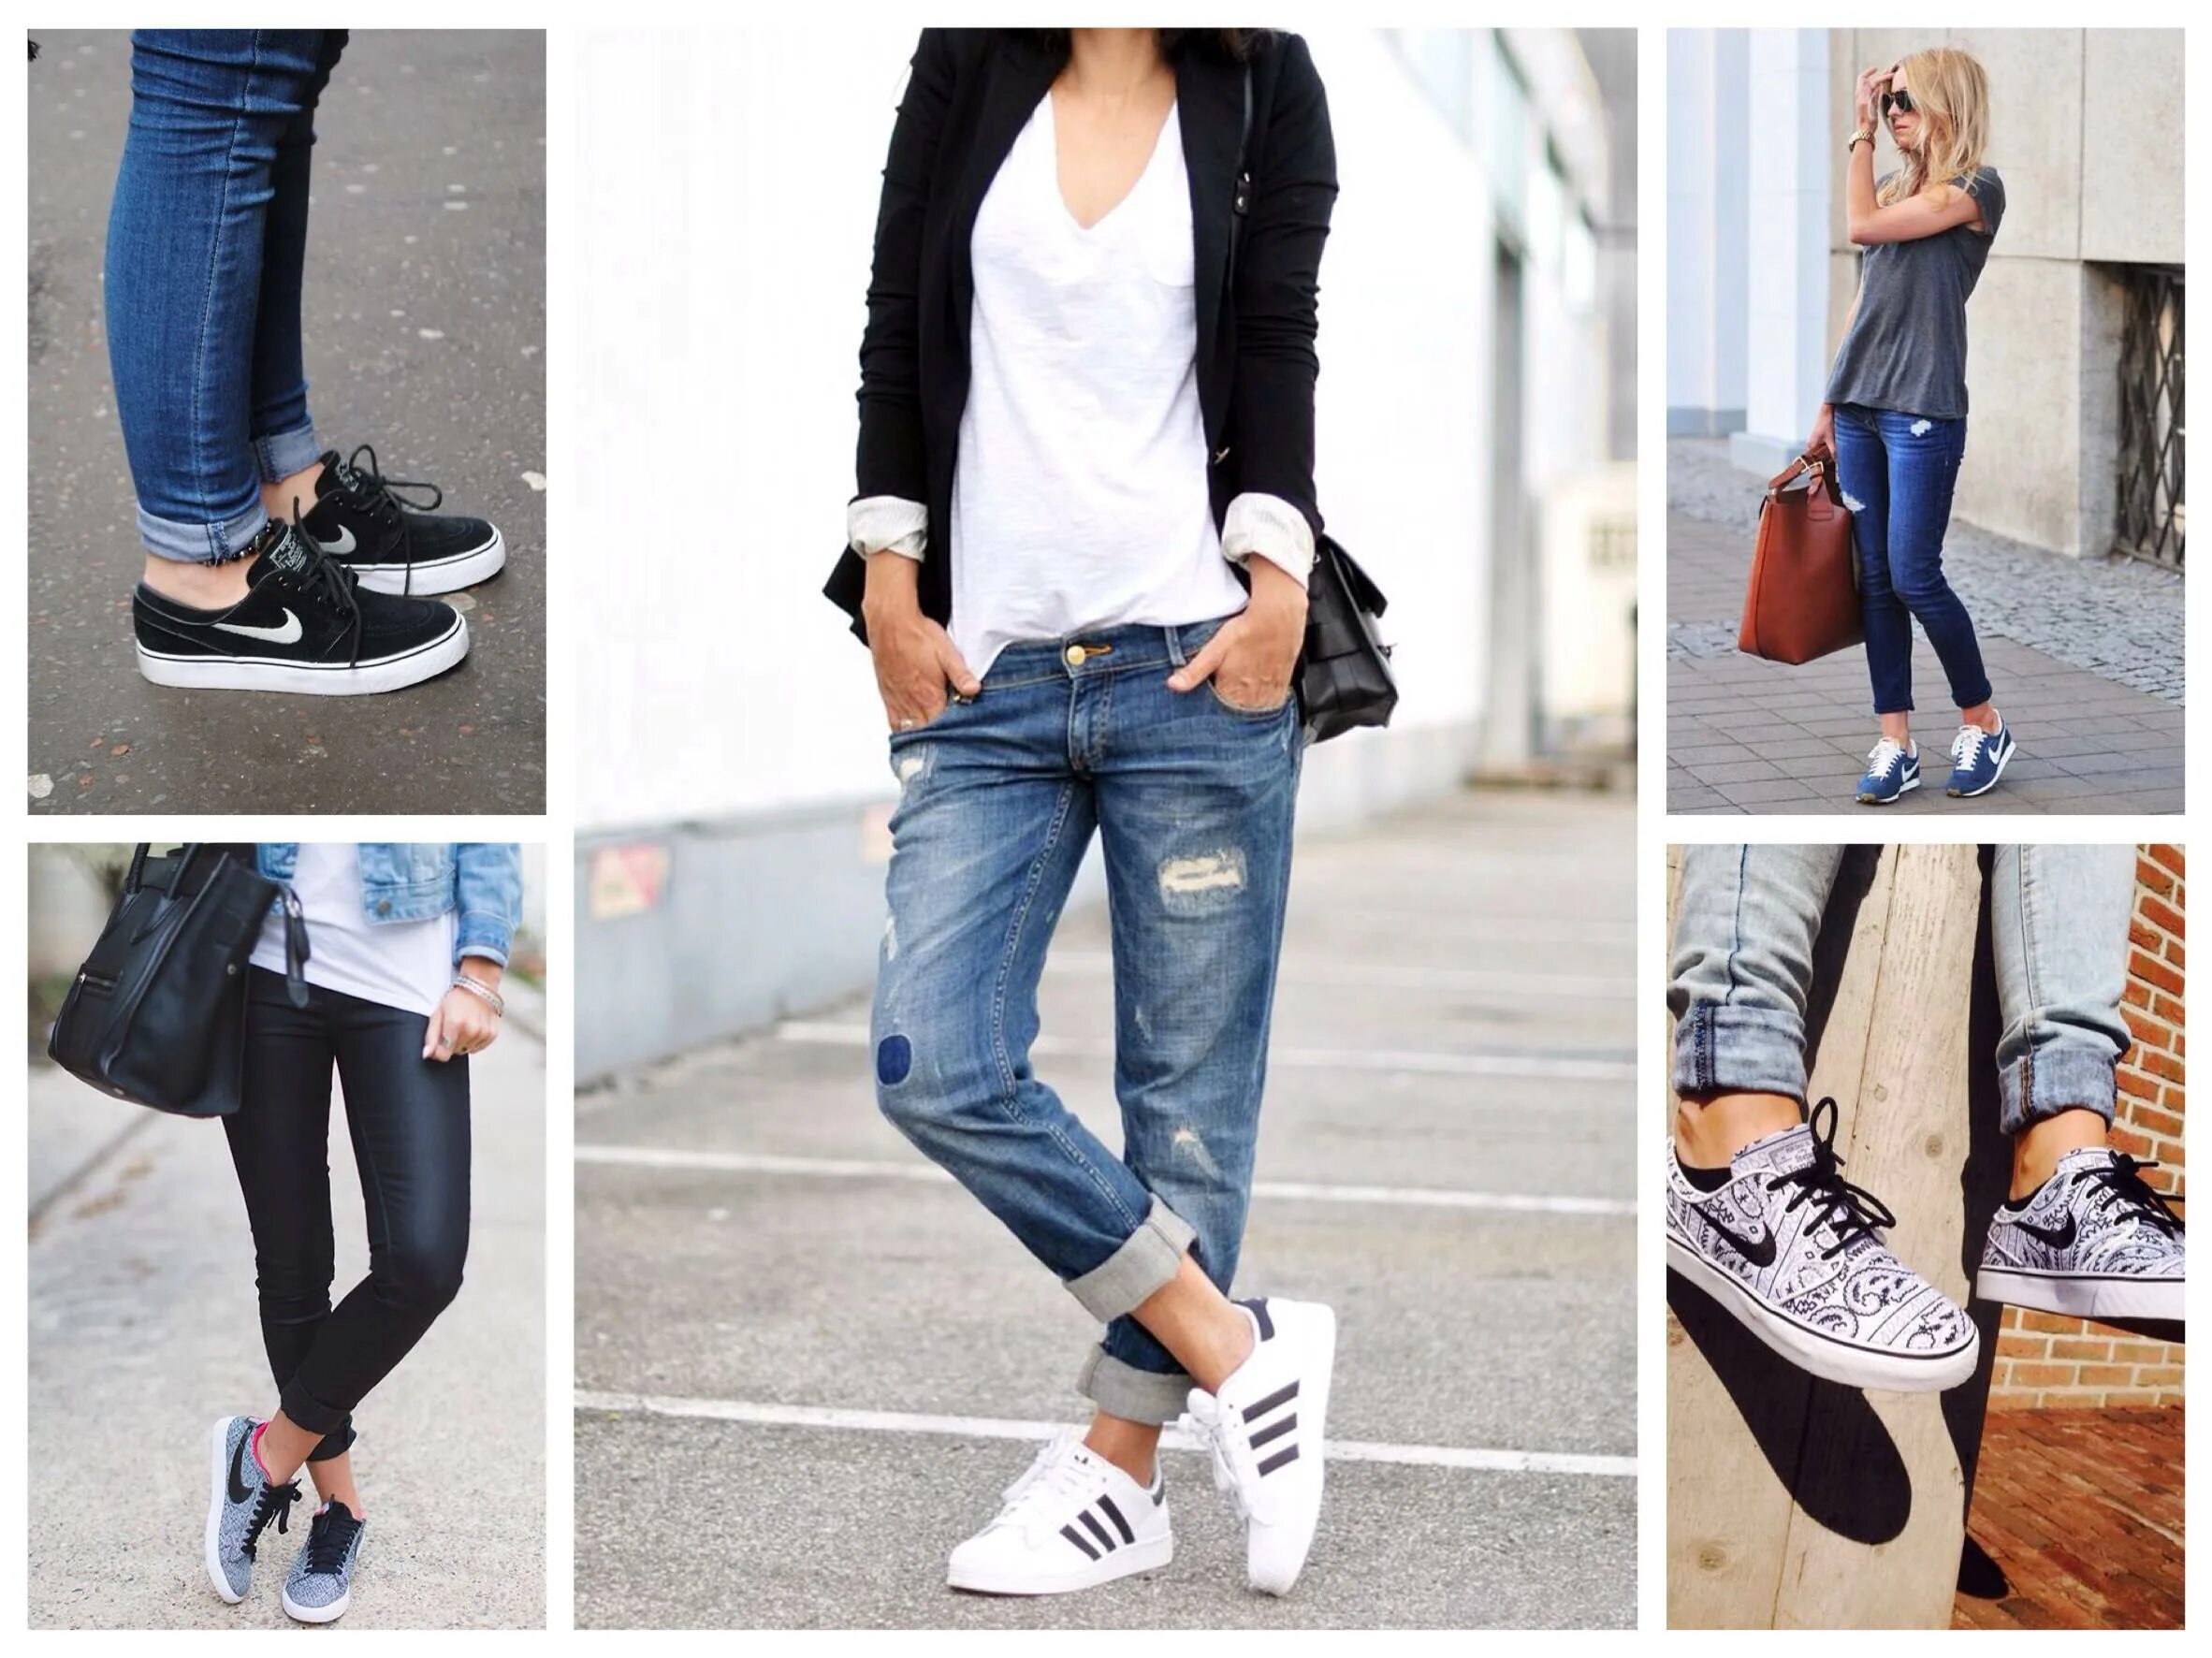 Кроссовки под джинсы женские. Джинсы с кедами. Обувь под джинсы женские. Кроссовки к джинсам женские.